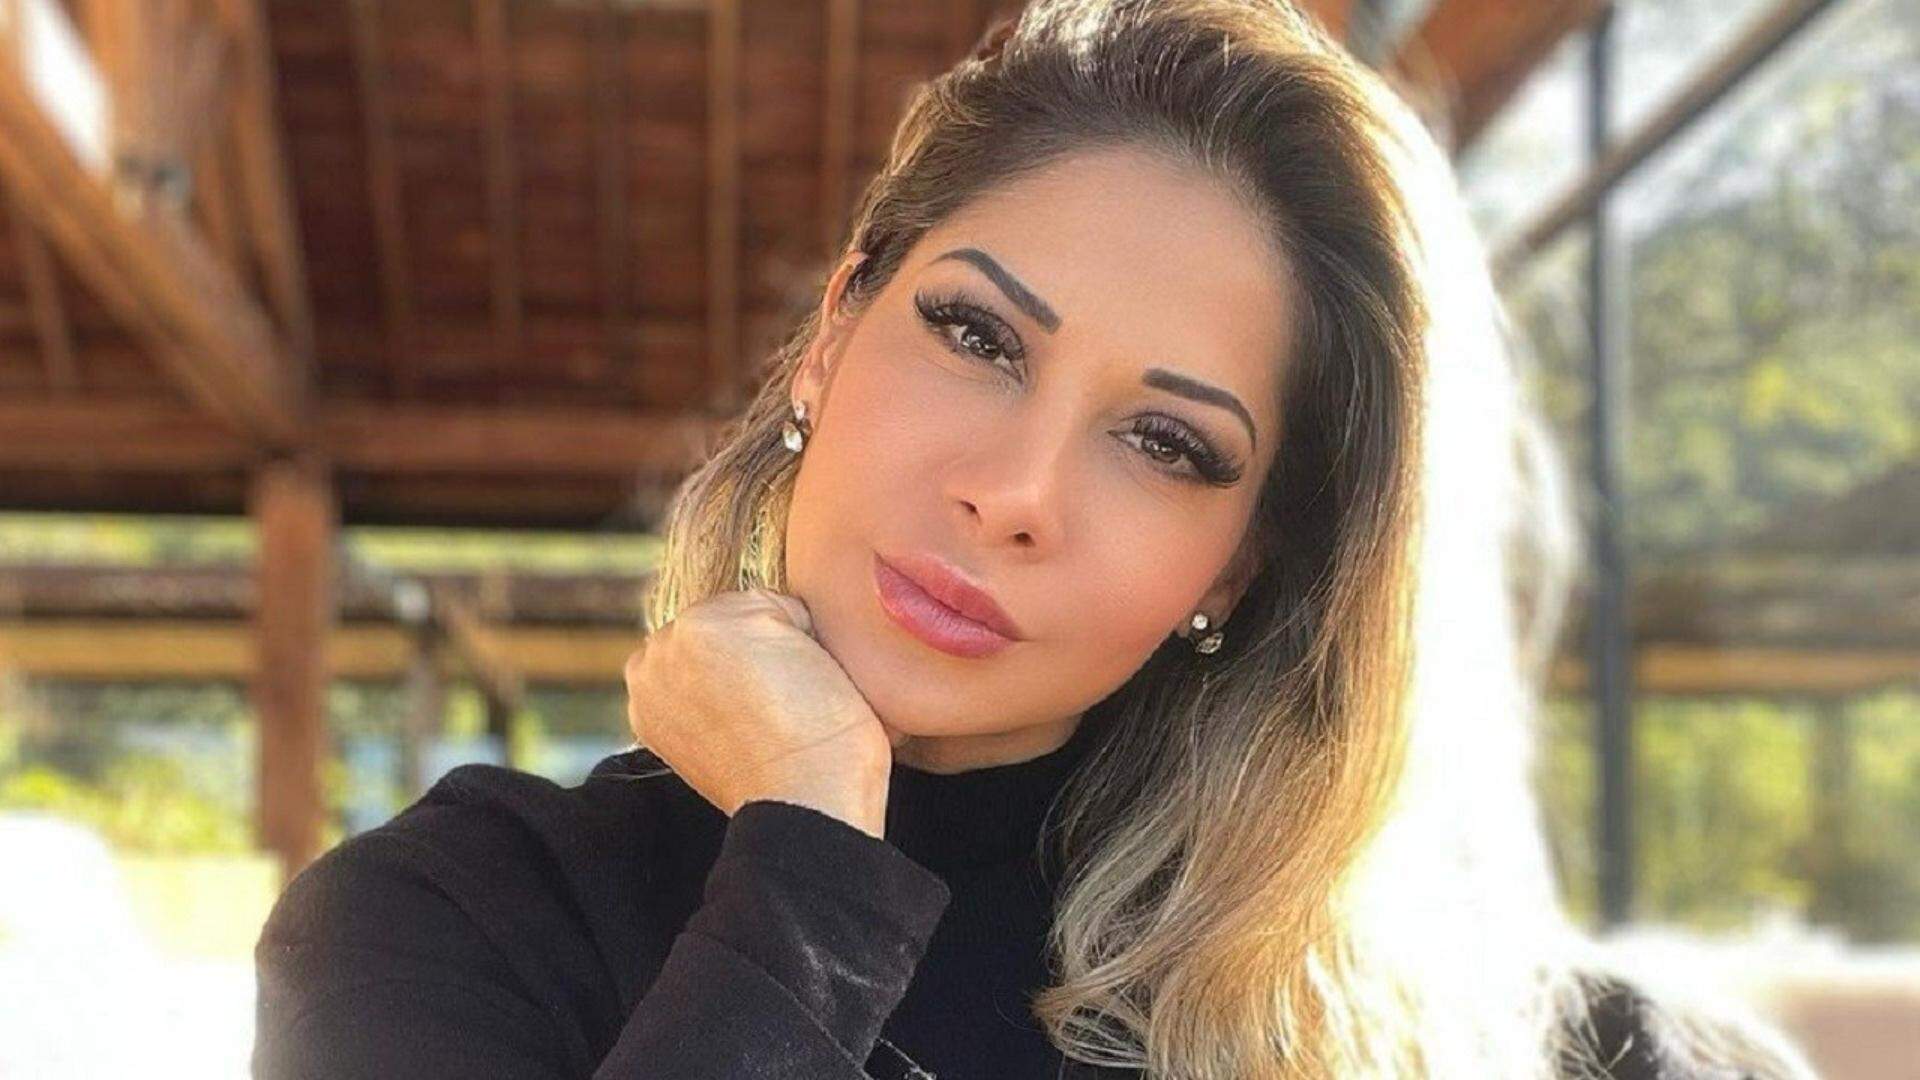 Equipe de Maíra Cardi rebate condenação e revela mais detalhes do processo:”Notícia distorcida”